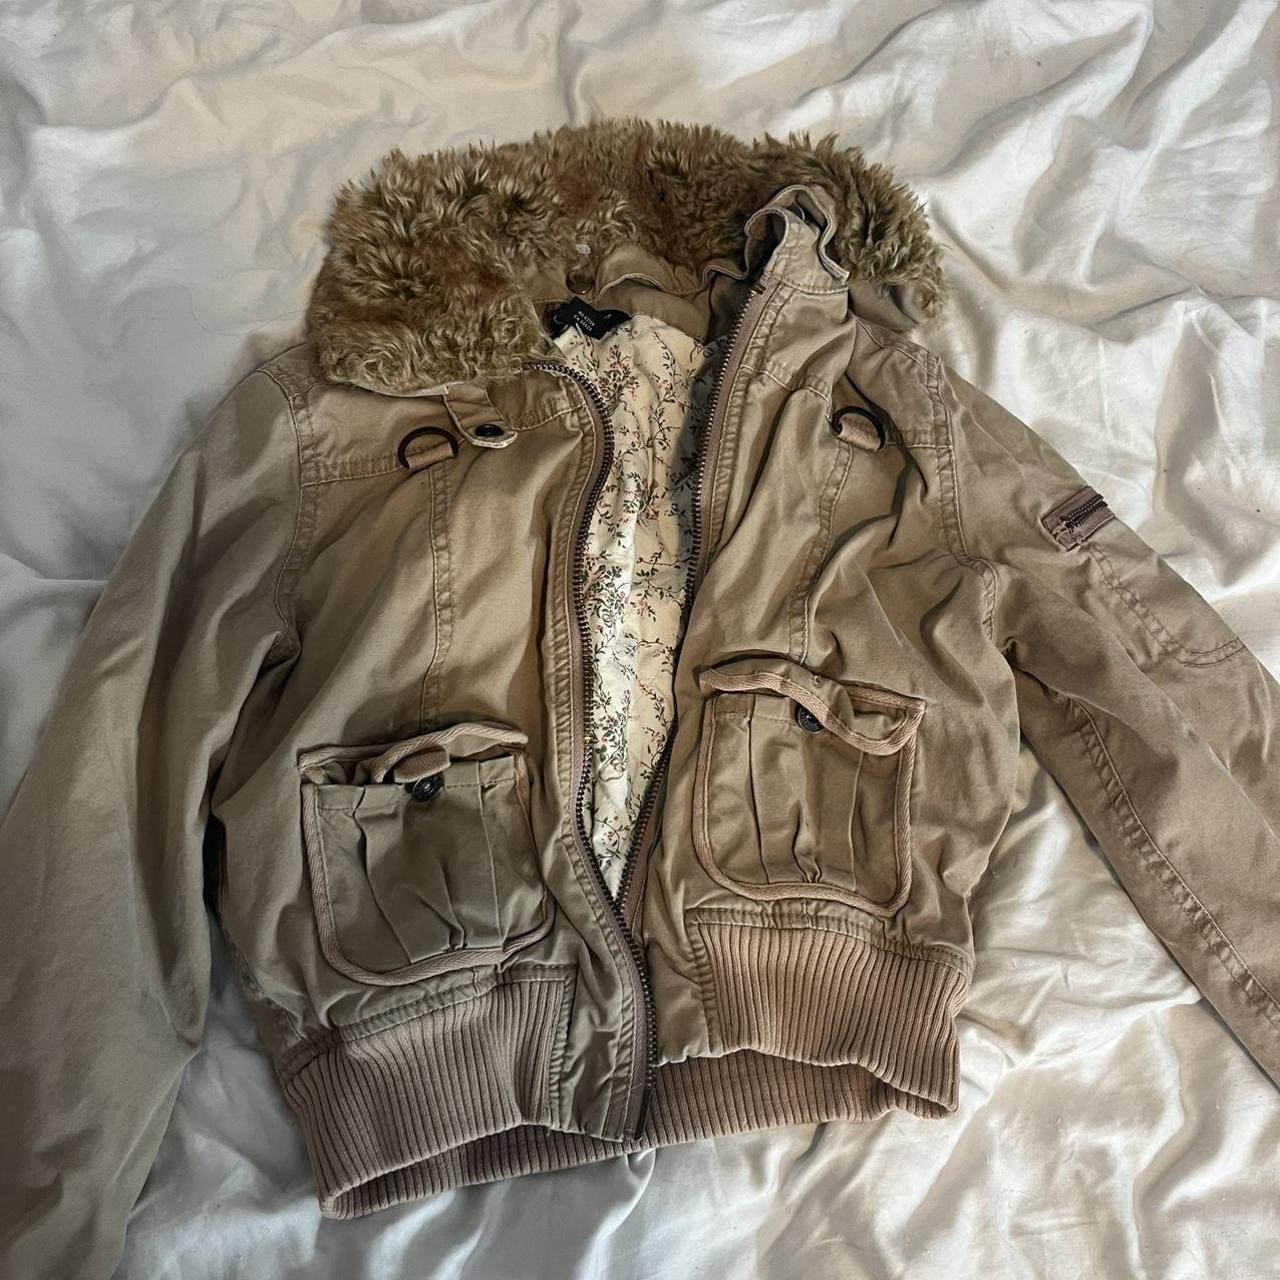 Guess jeans vintage cropped bomber jacket cargo... - Depop